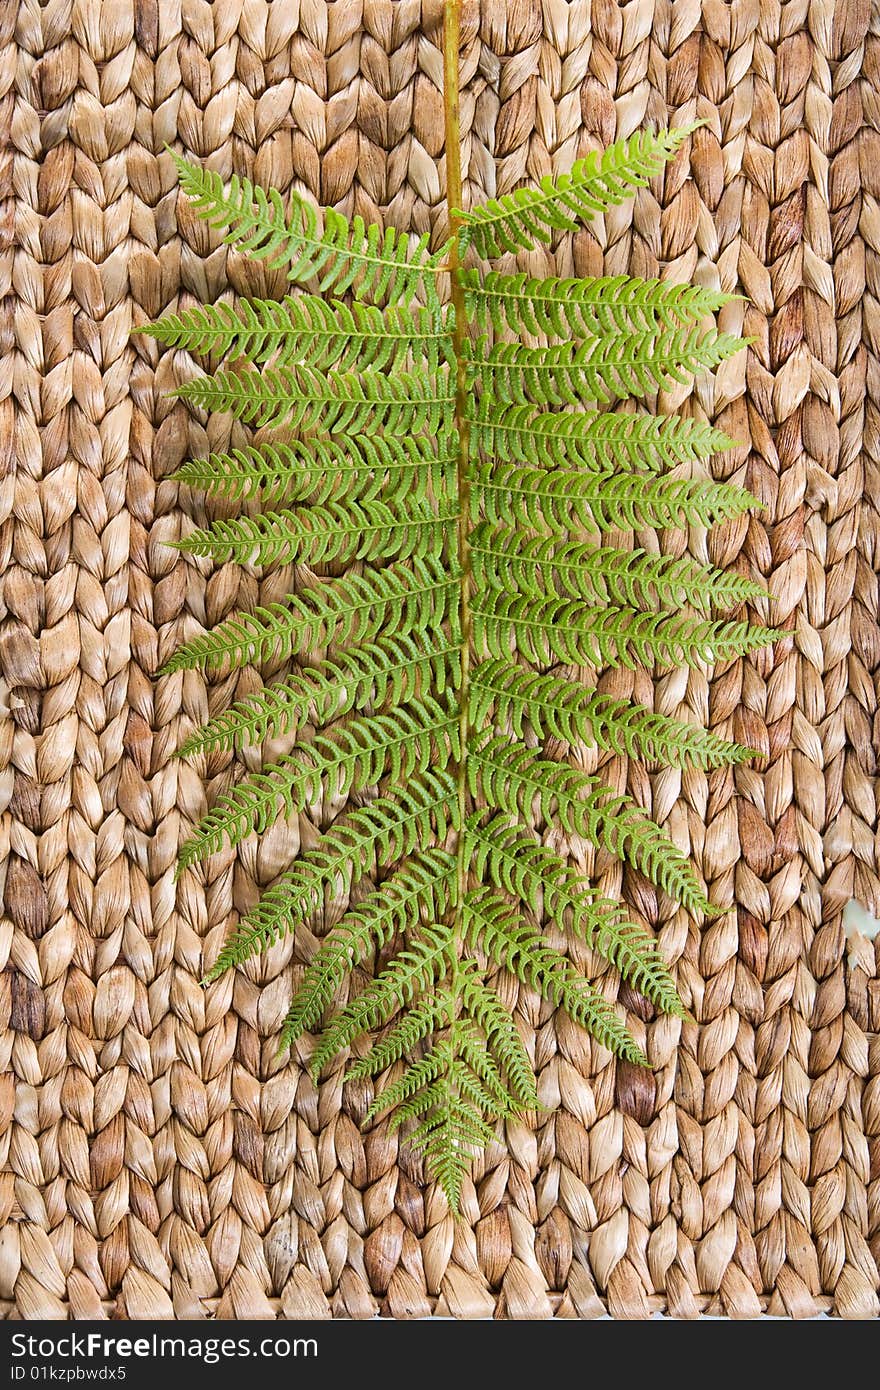 Fren leaf on a grass mat shot at a day spa